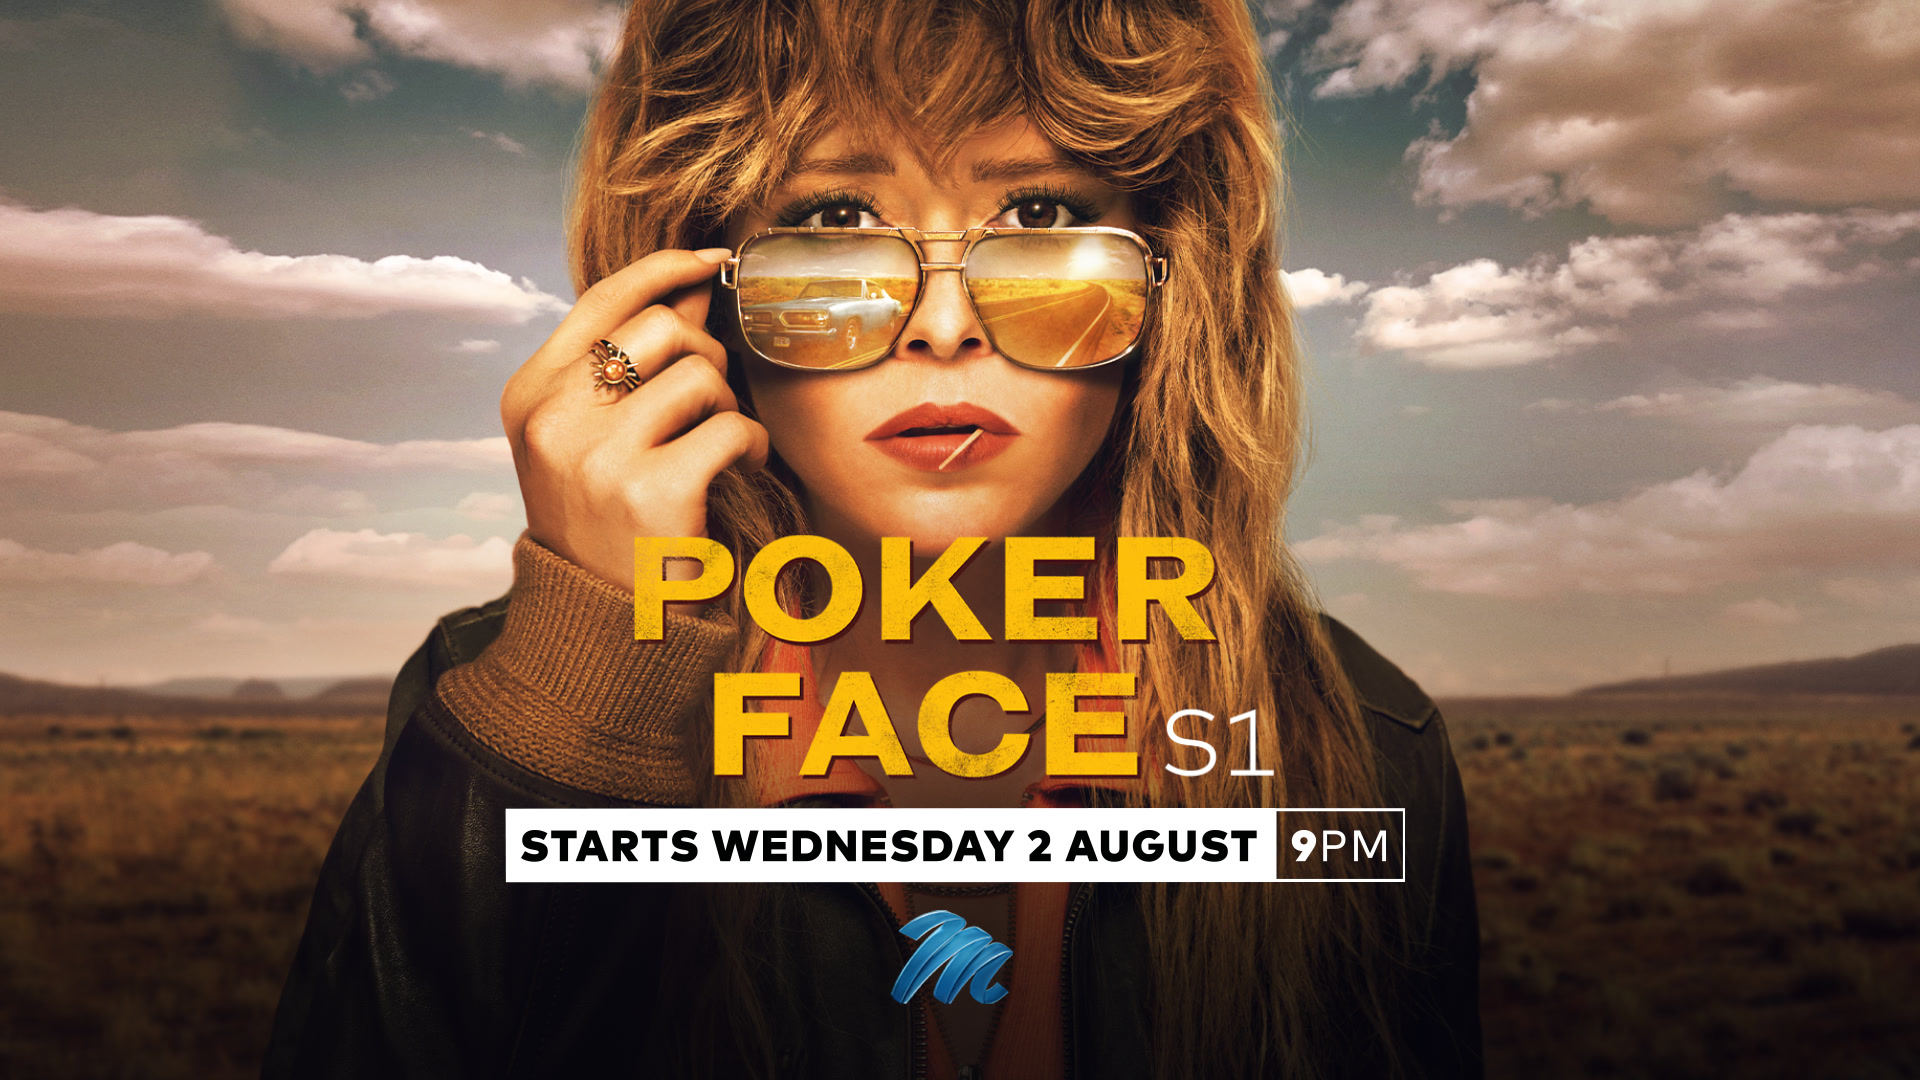 Poker Face' Trailer: Rian Johnson Directs Natasha Lyonne